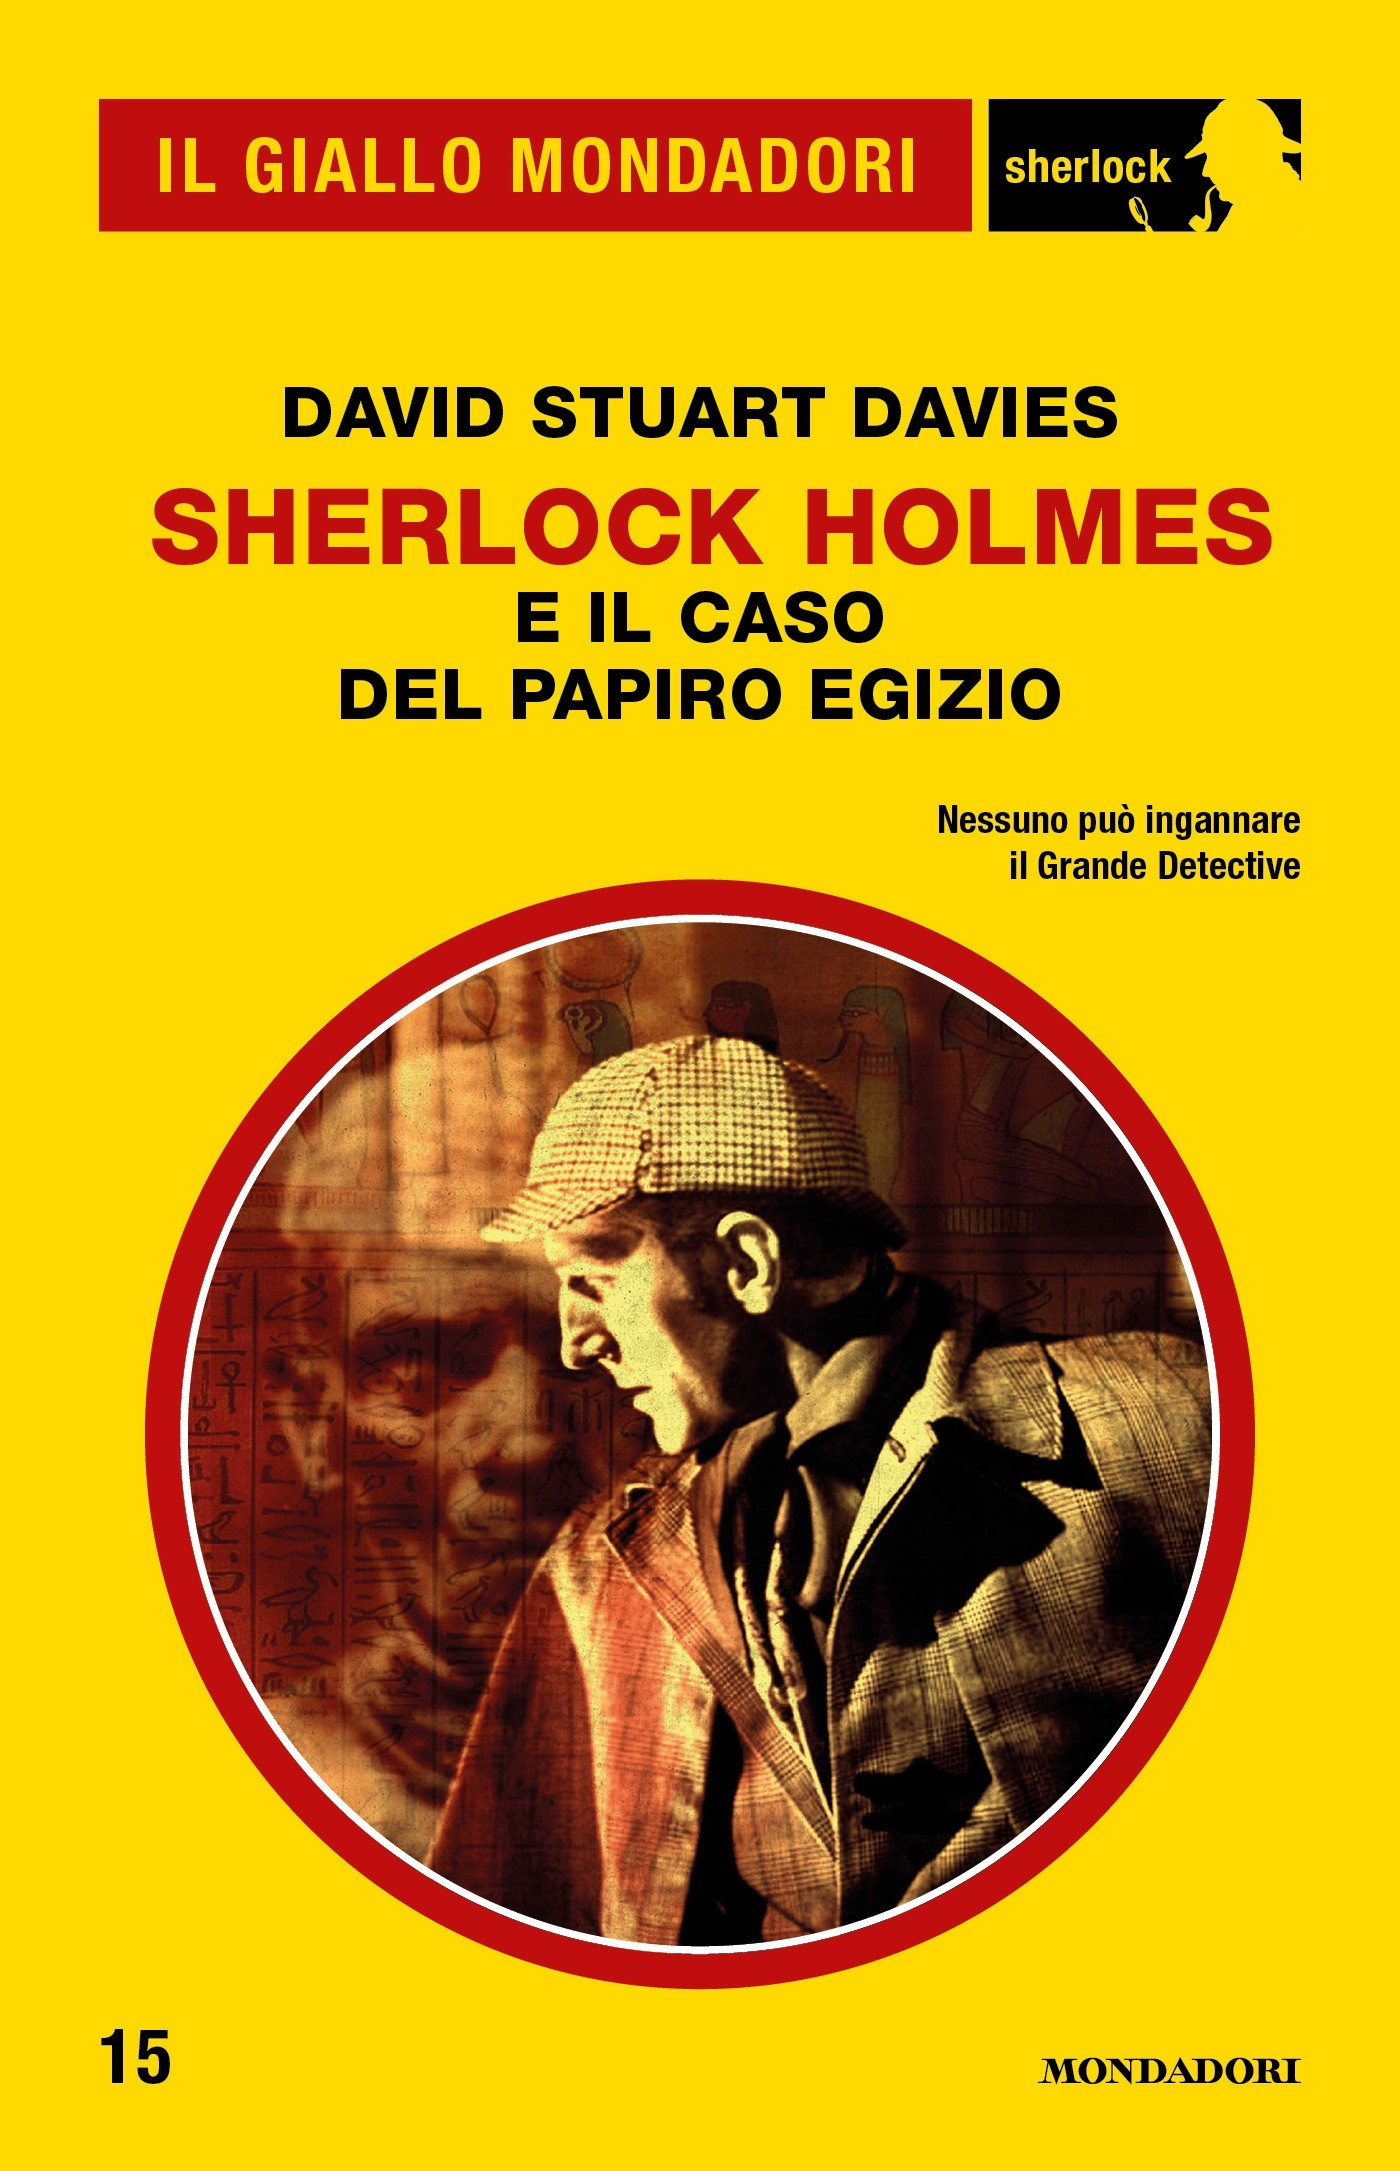 Sherlock Holmes e il caso del papiro egizio (Il Giallo Mondadori Sherlock) - Librerie.coop